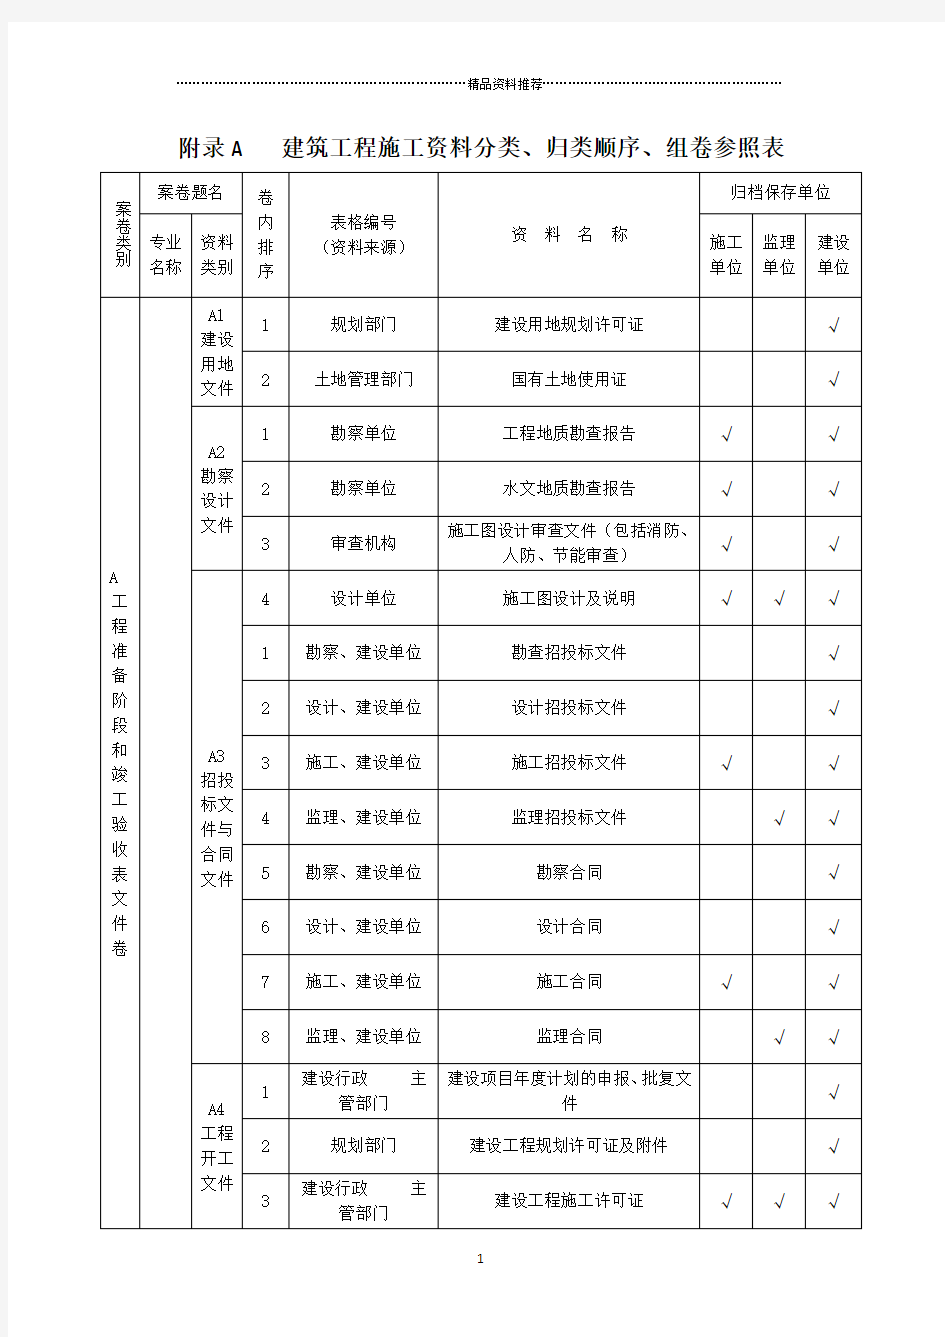 山西省建筑施工资料管理规程(一)资料分类、归档顺序、组卷参照表